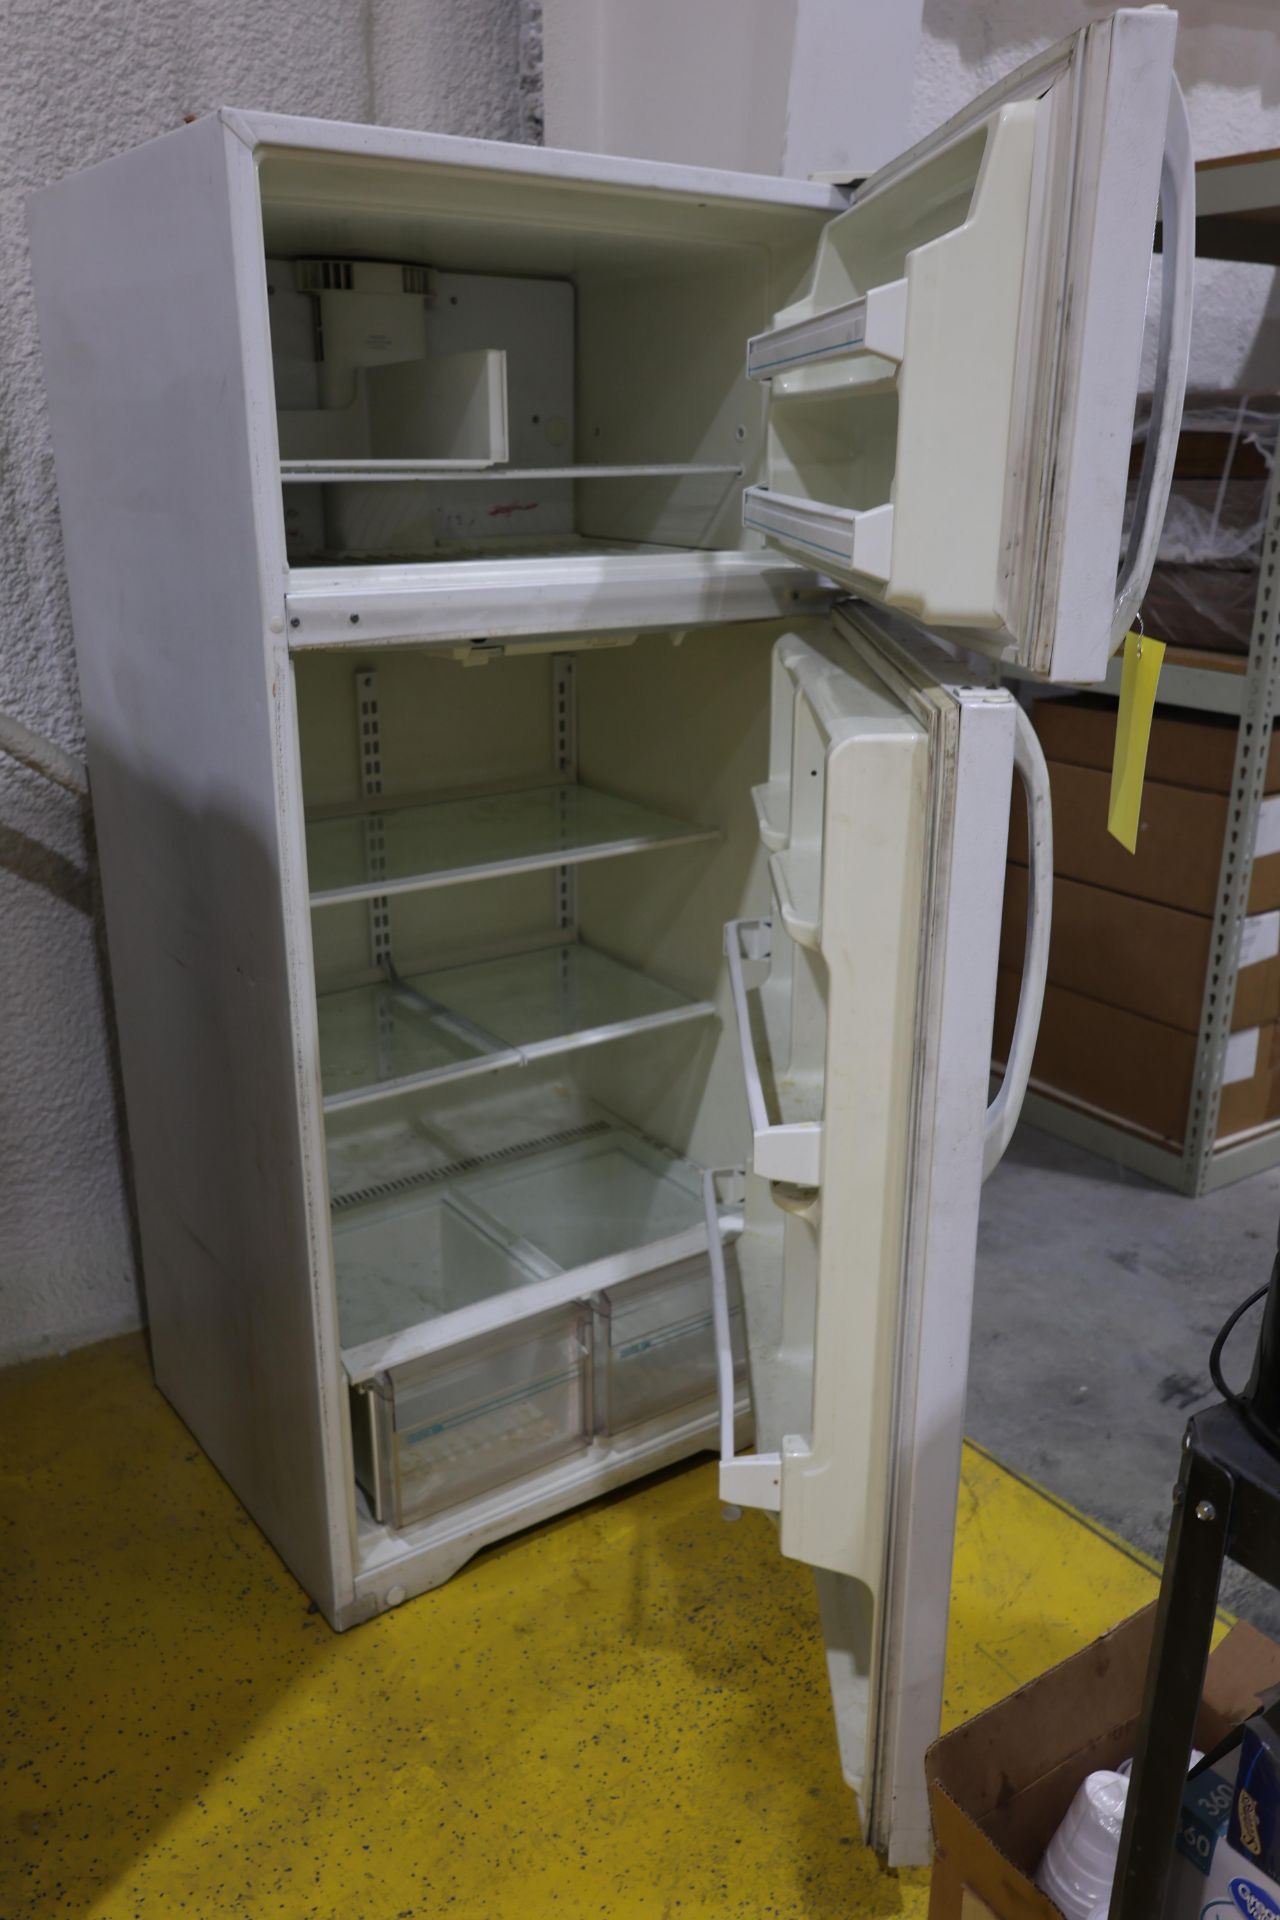 Refrigerator - Image 2 of 2